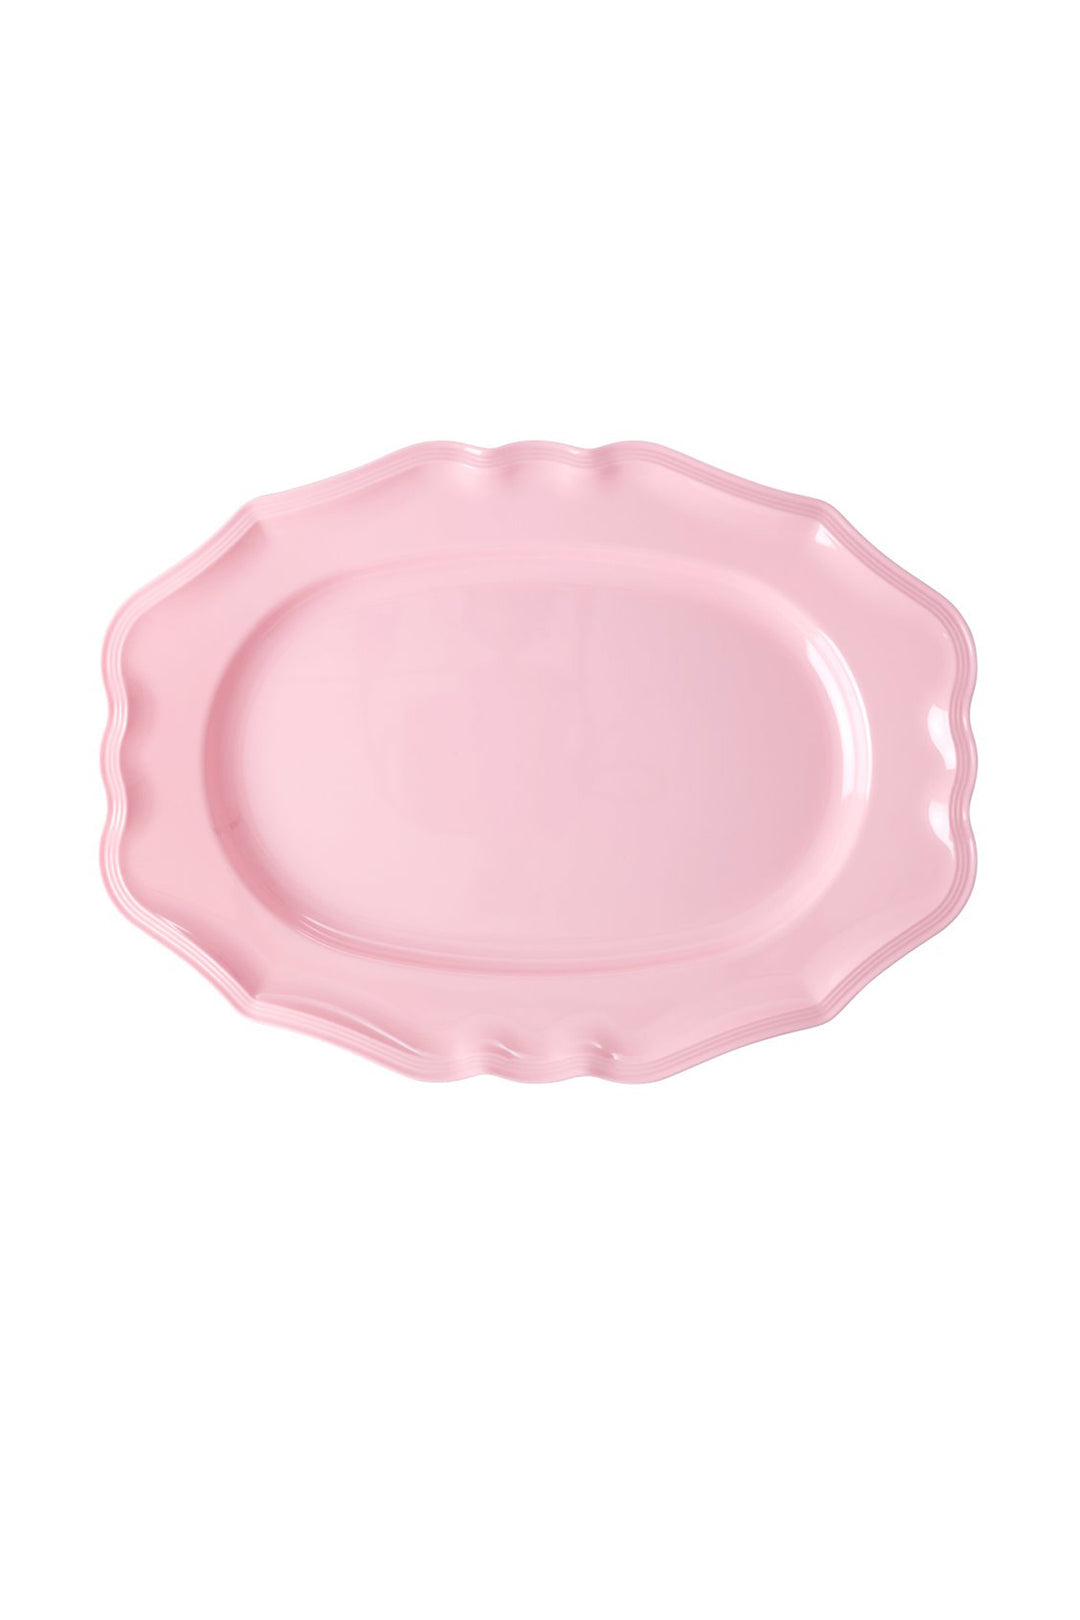 Ballet Slippers Pink Large Melamine Serving Plate